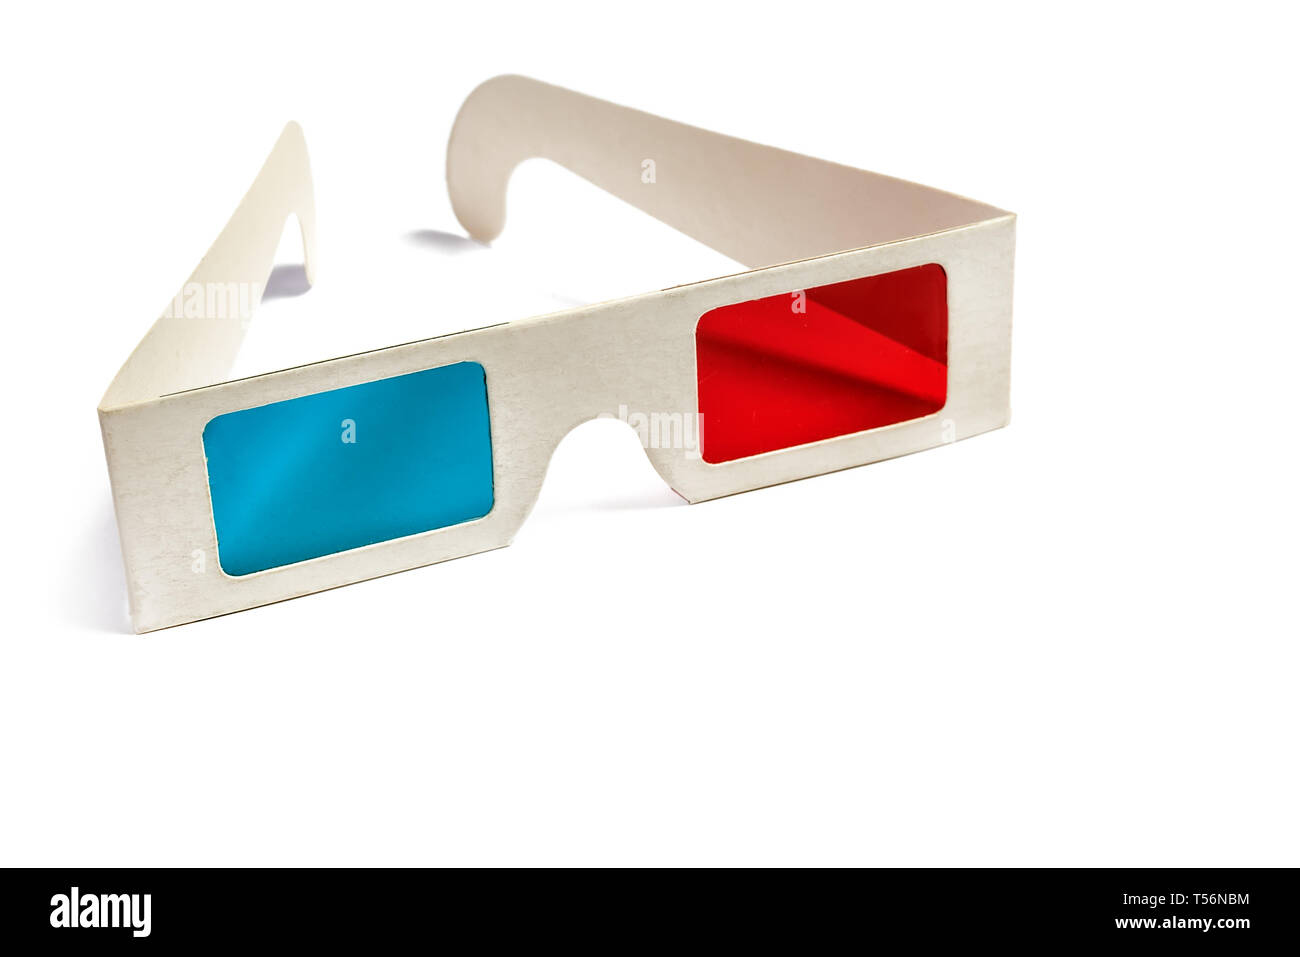 Vue latérale d'une paire de lunettes 3D isolé sur fond blanc. Copie de l'espace pour votre texte Banque D'Images